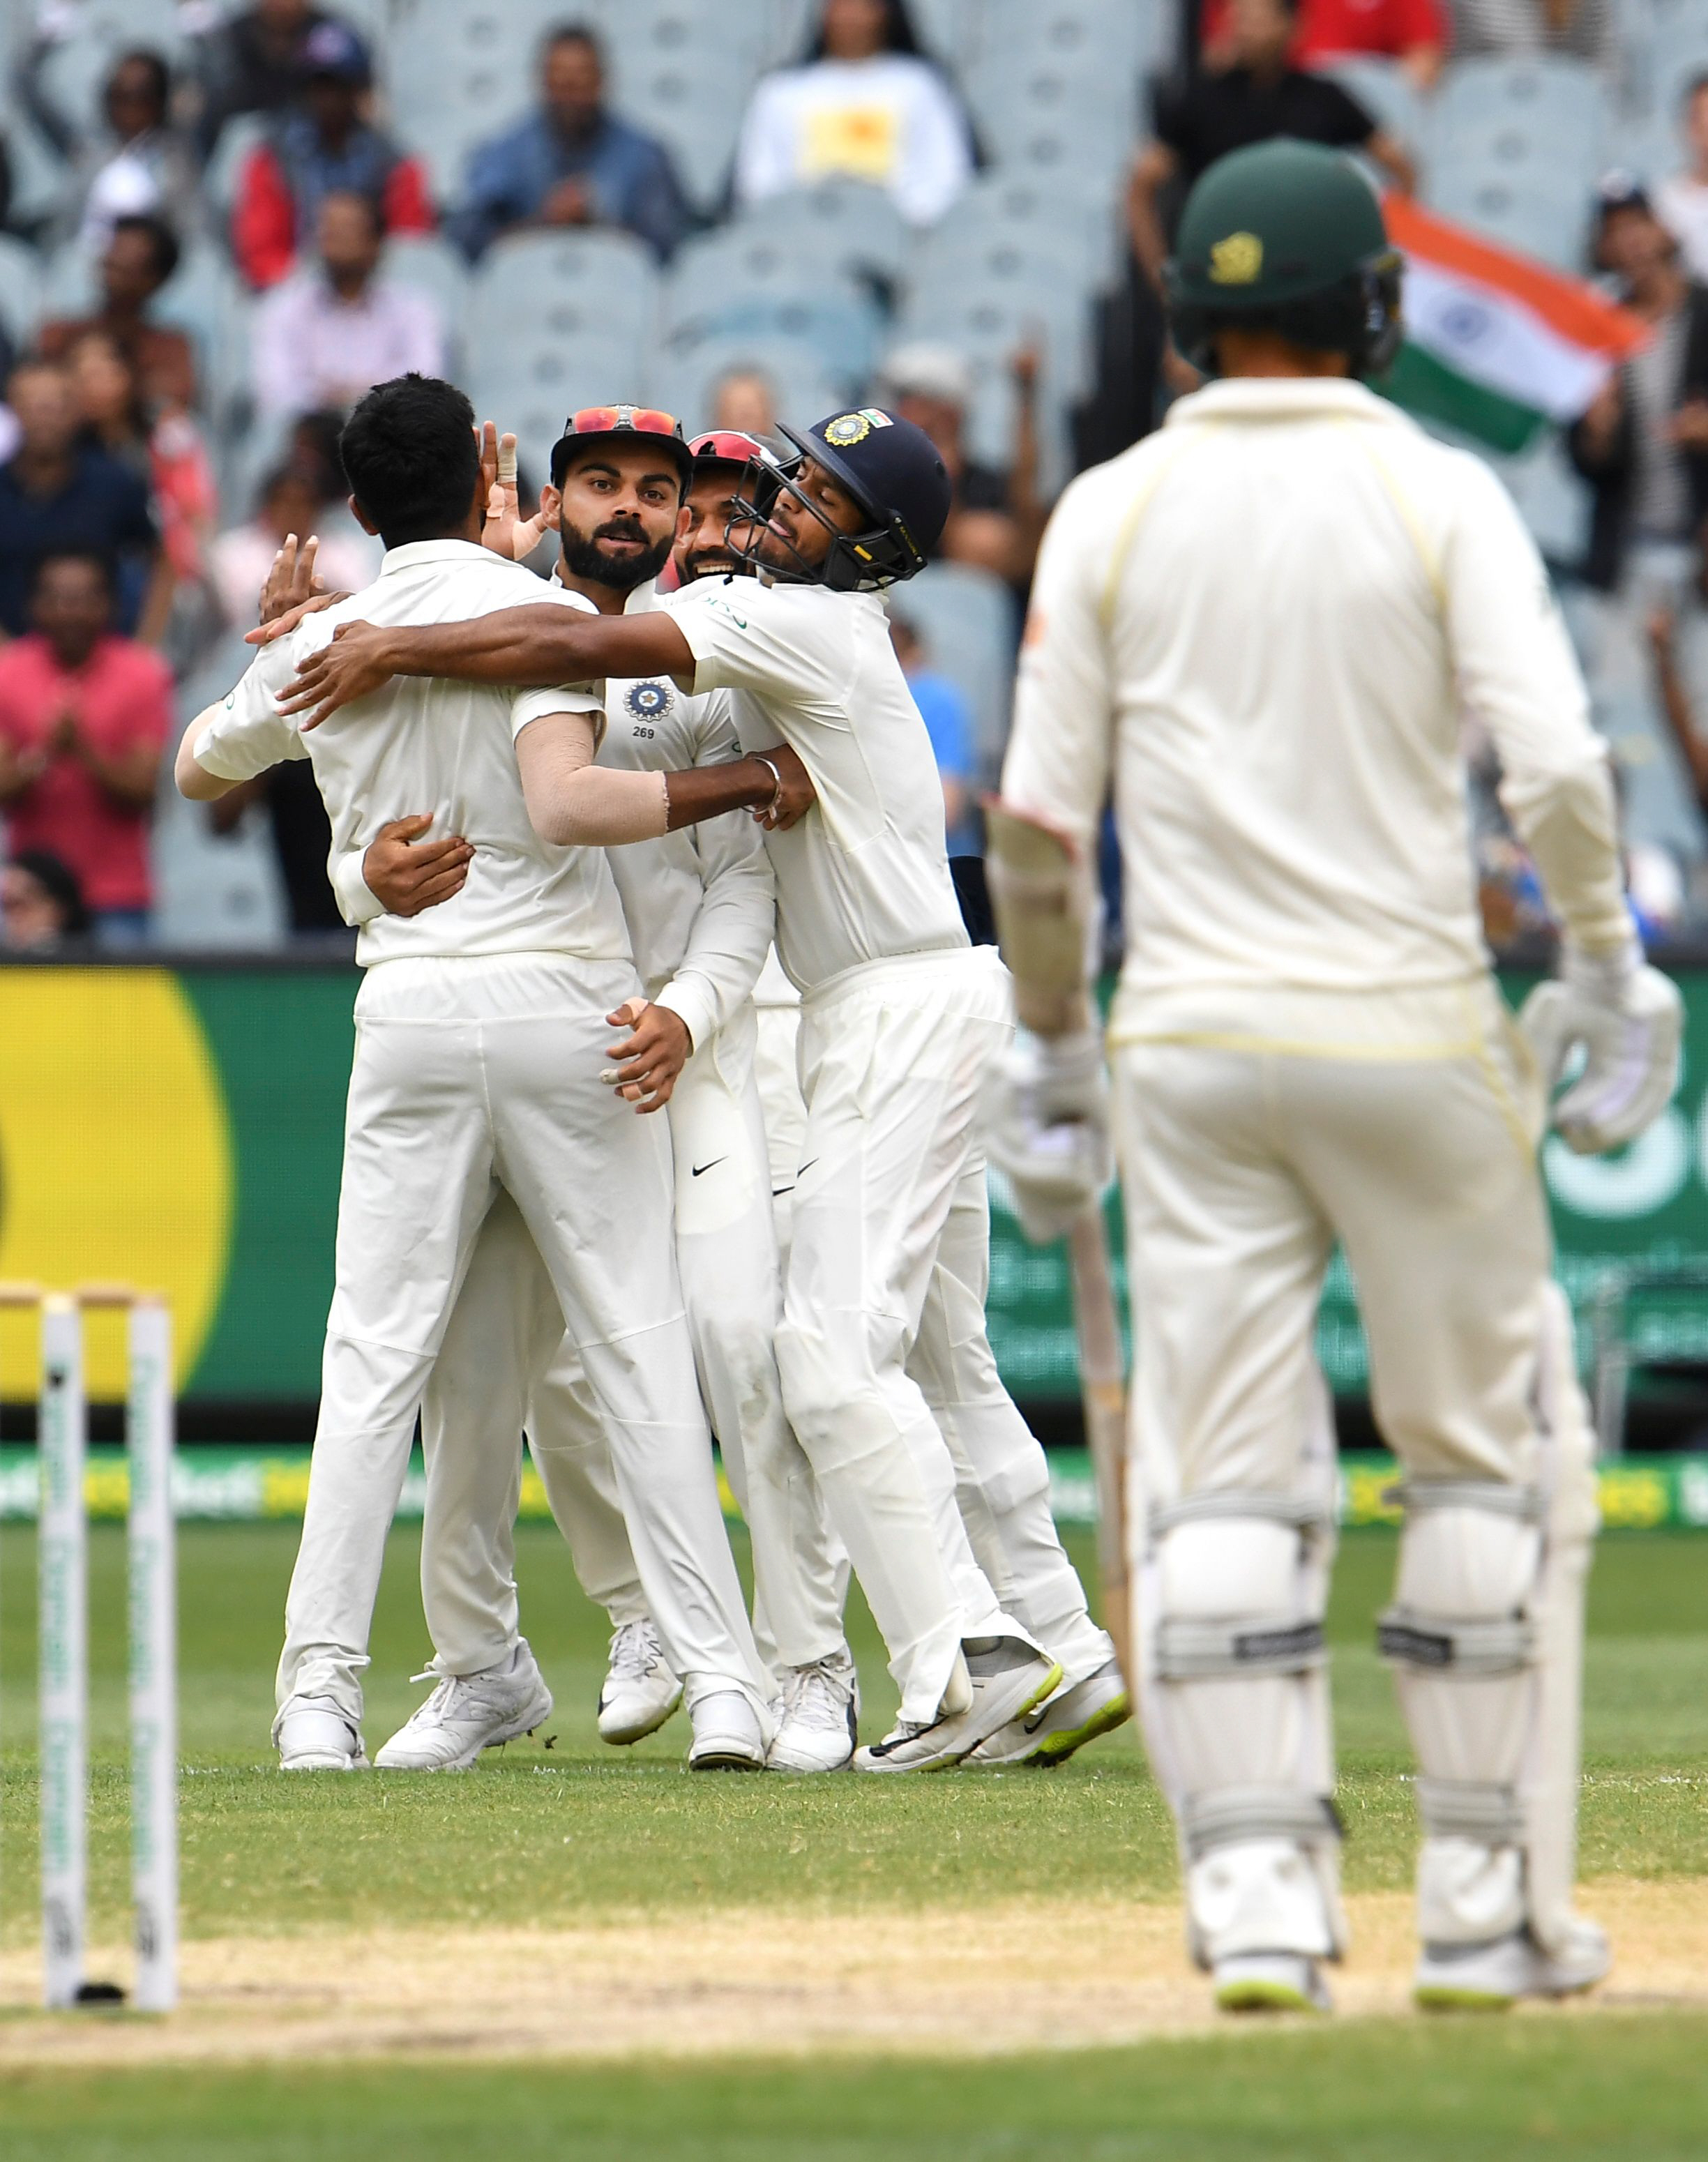 Australia vs India - Third Test in Melbourne